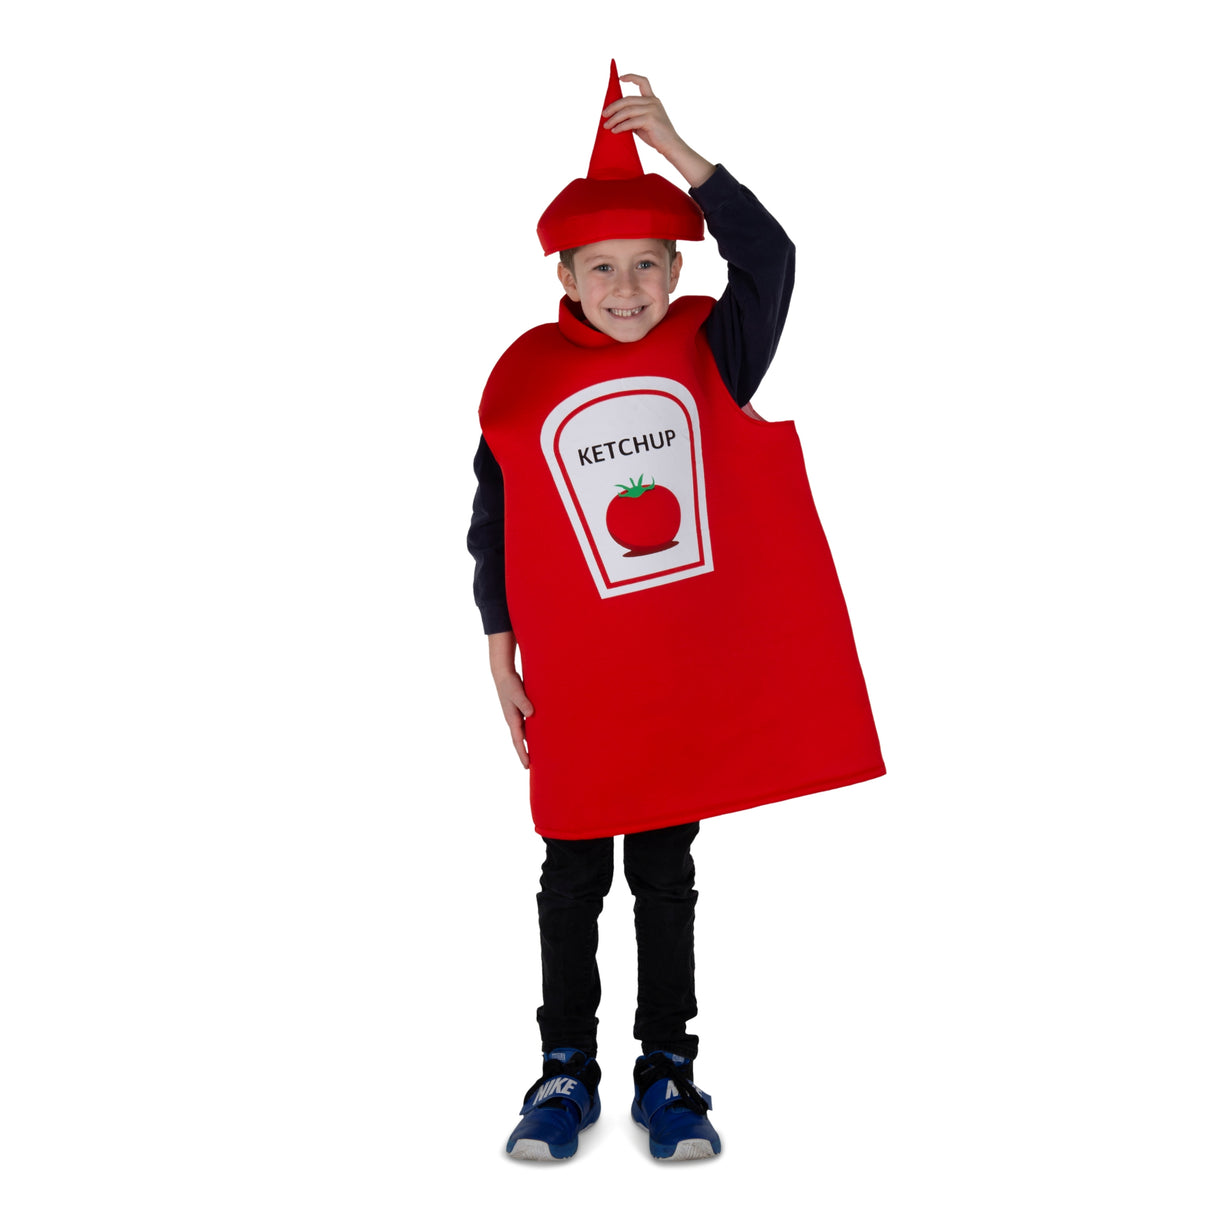 Ketchup Bottle Costume - Kids